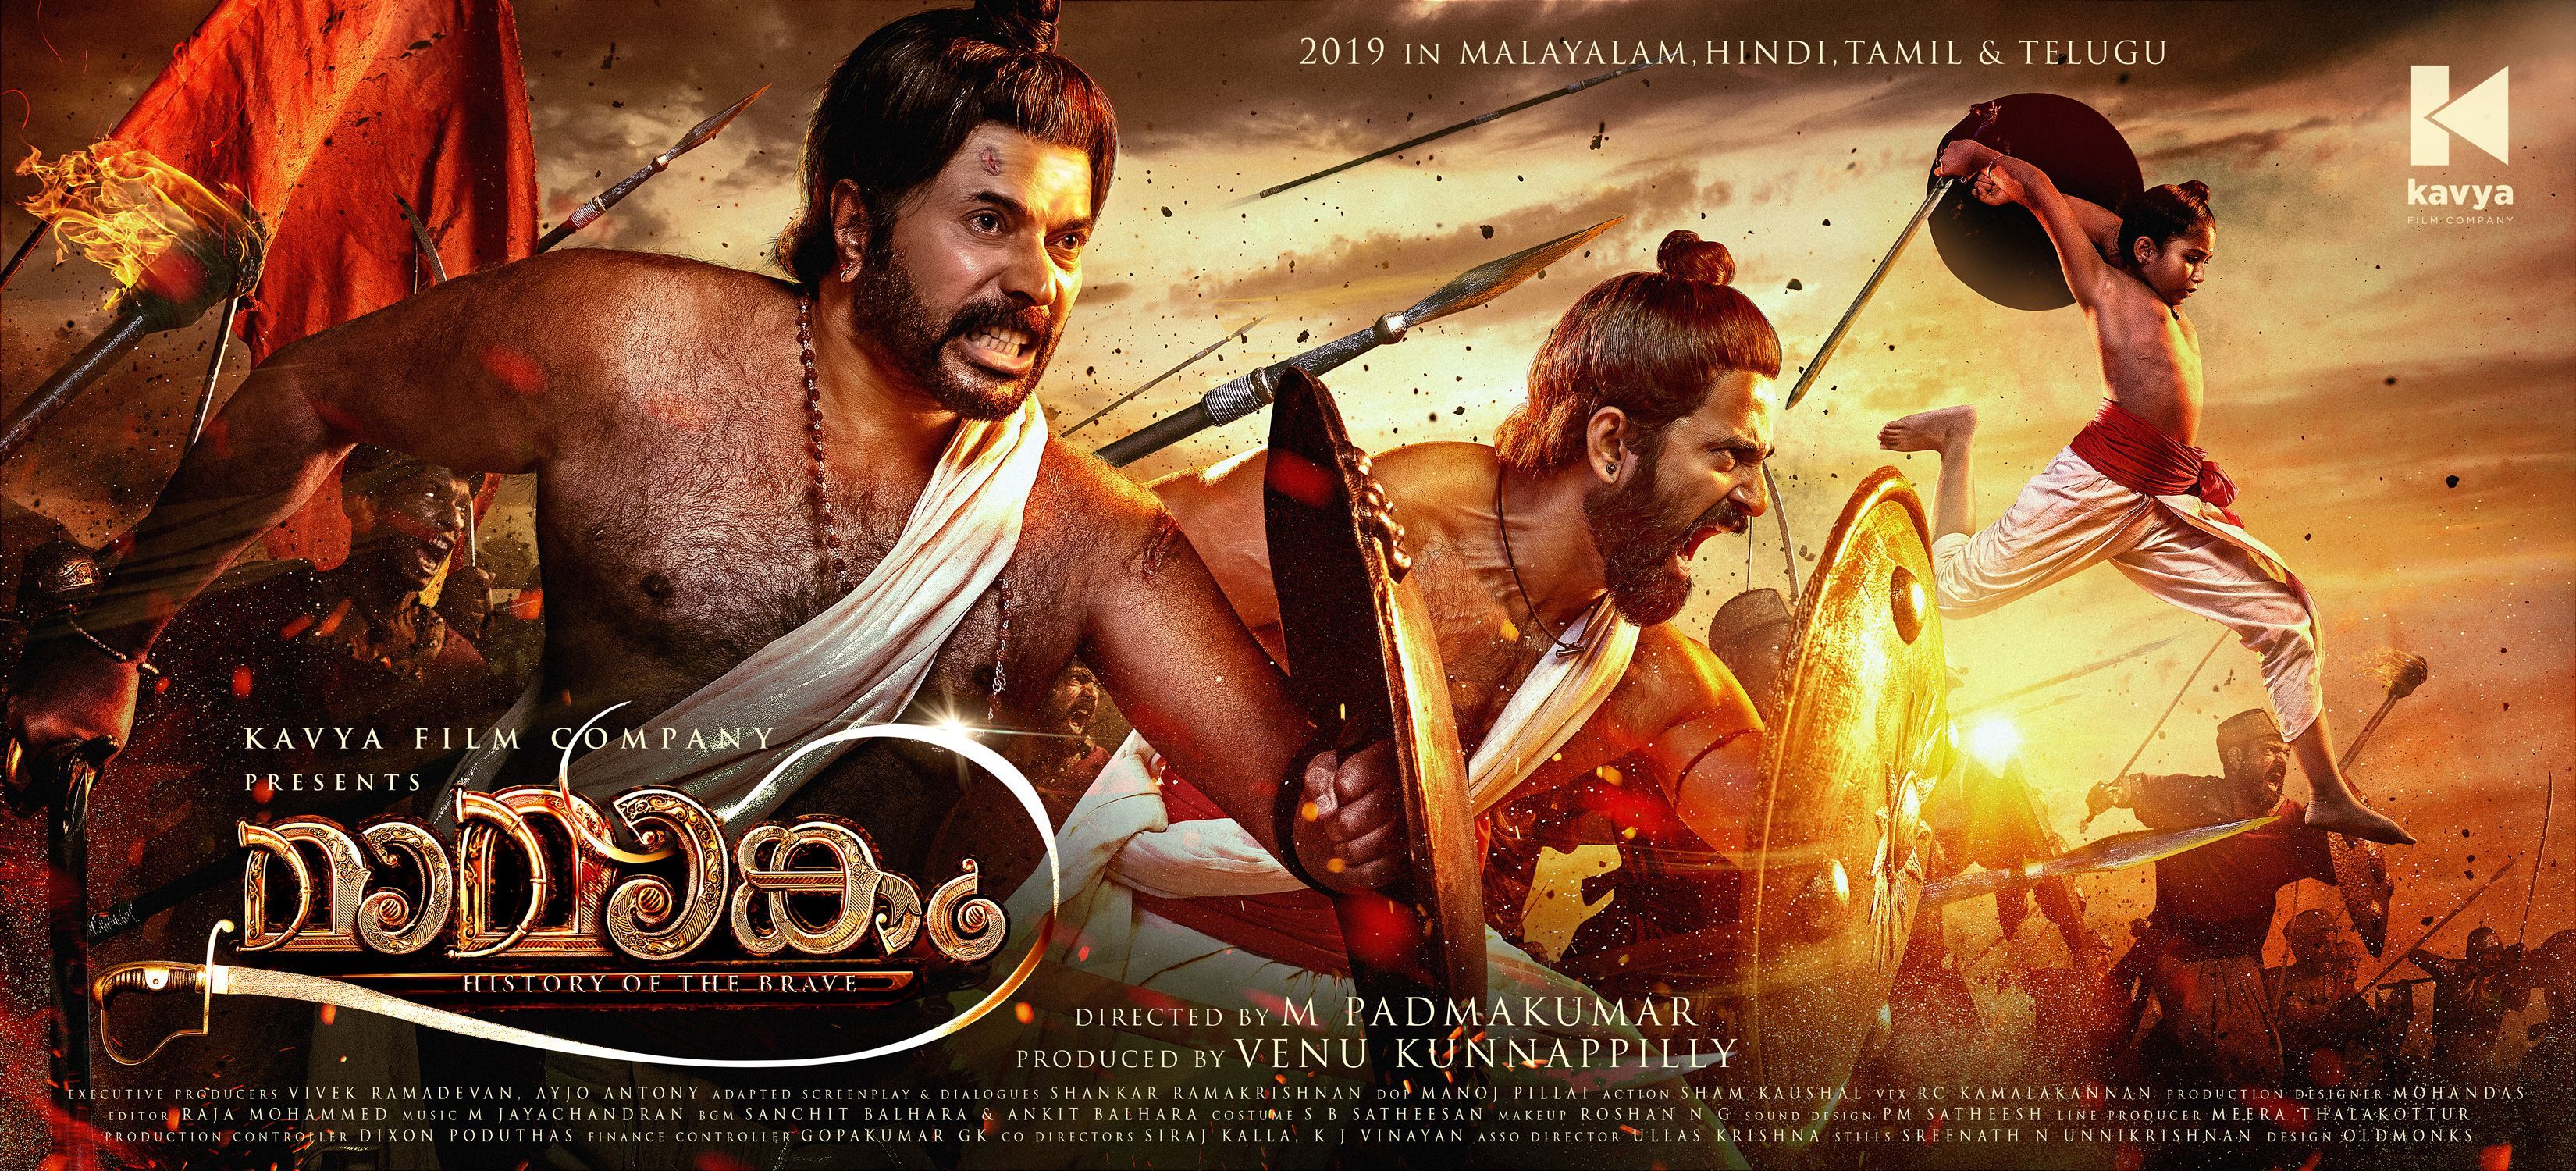 Malayalam Christmas Release 2014 - Malayalam Xmas Films 2014 11